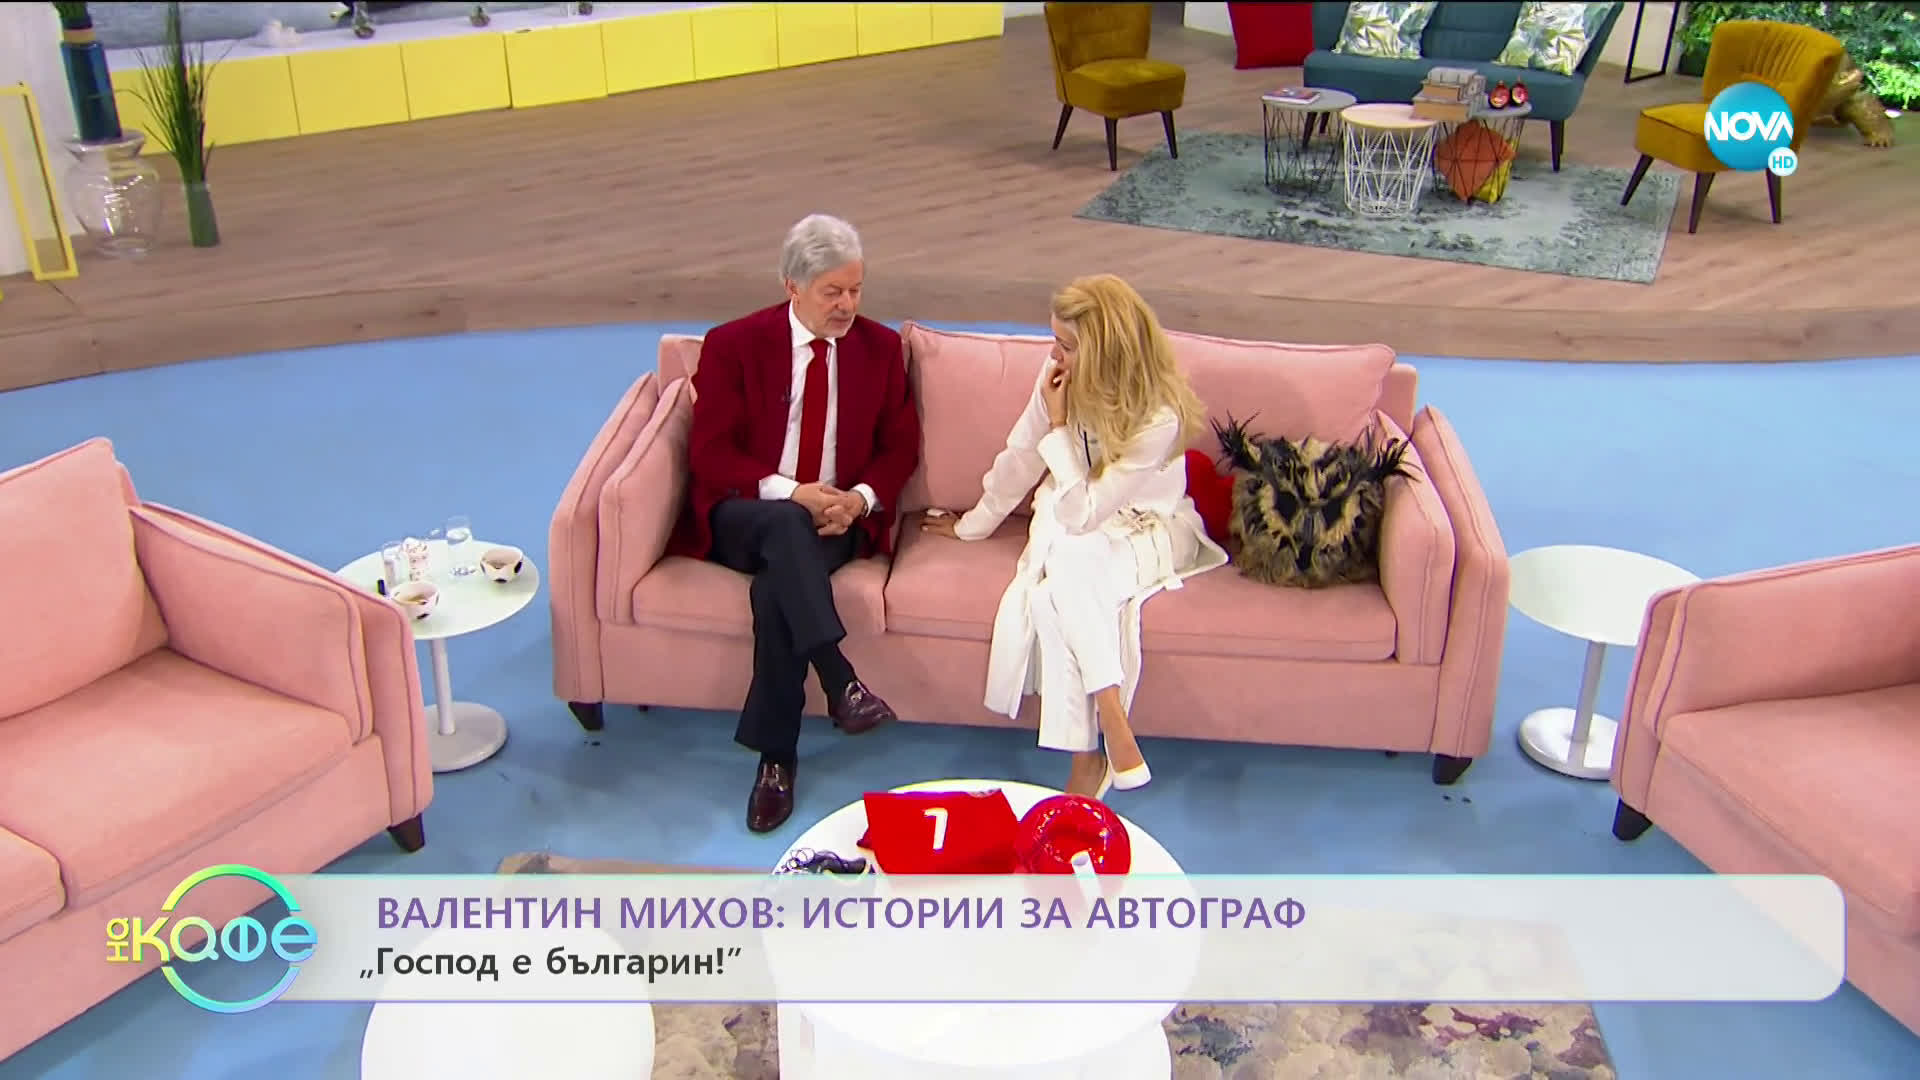 „На кафе“ с Валентин Михов (22.11.2019)